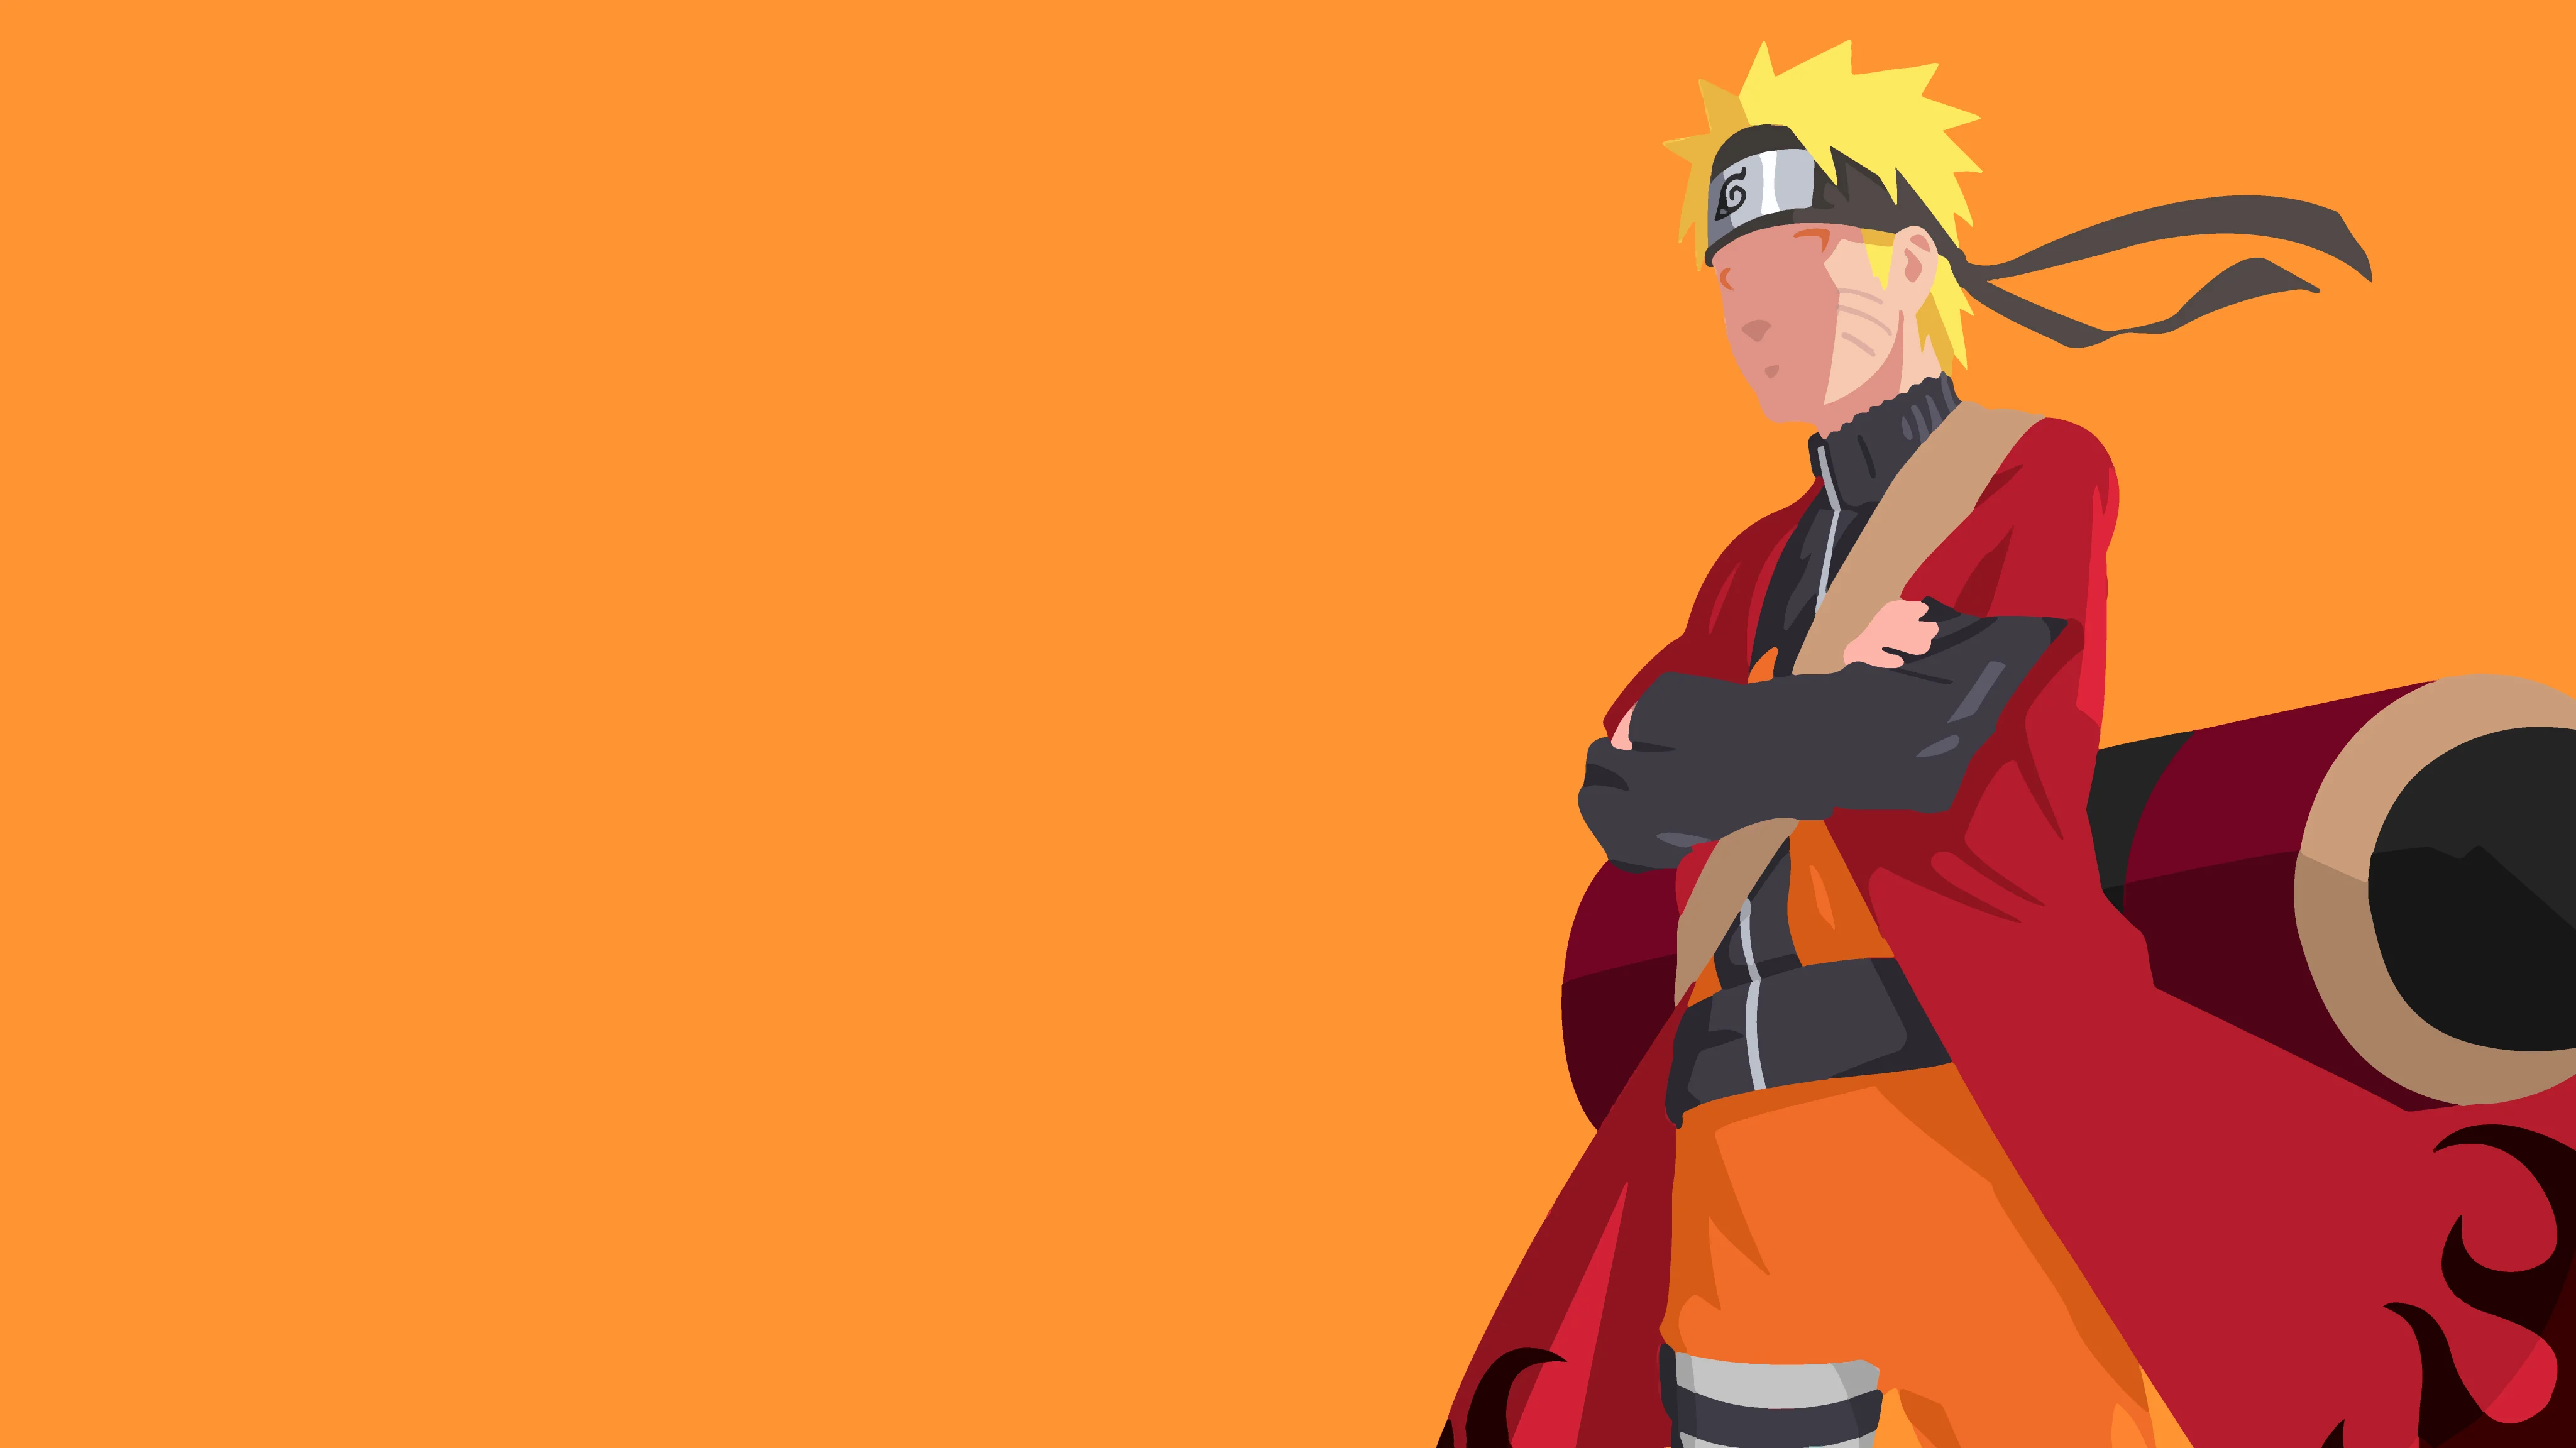 Naruto  Hình ảnh Naruto ảnh nền Naruto Wallpaper Naruto đẹp